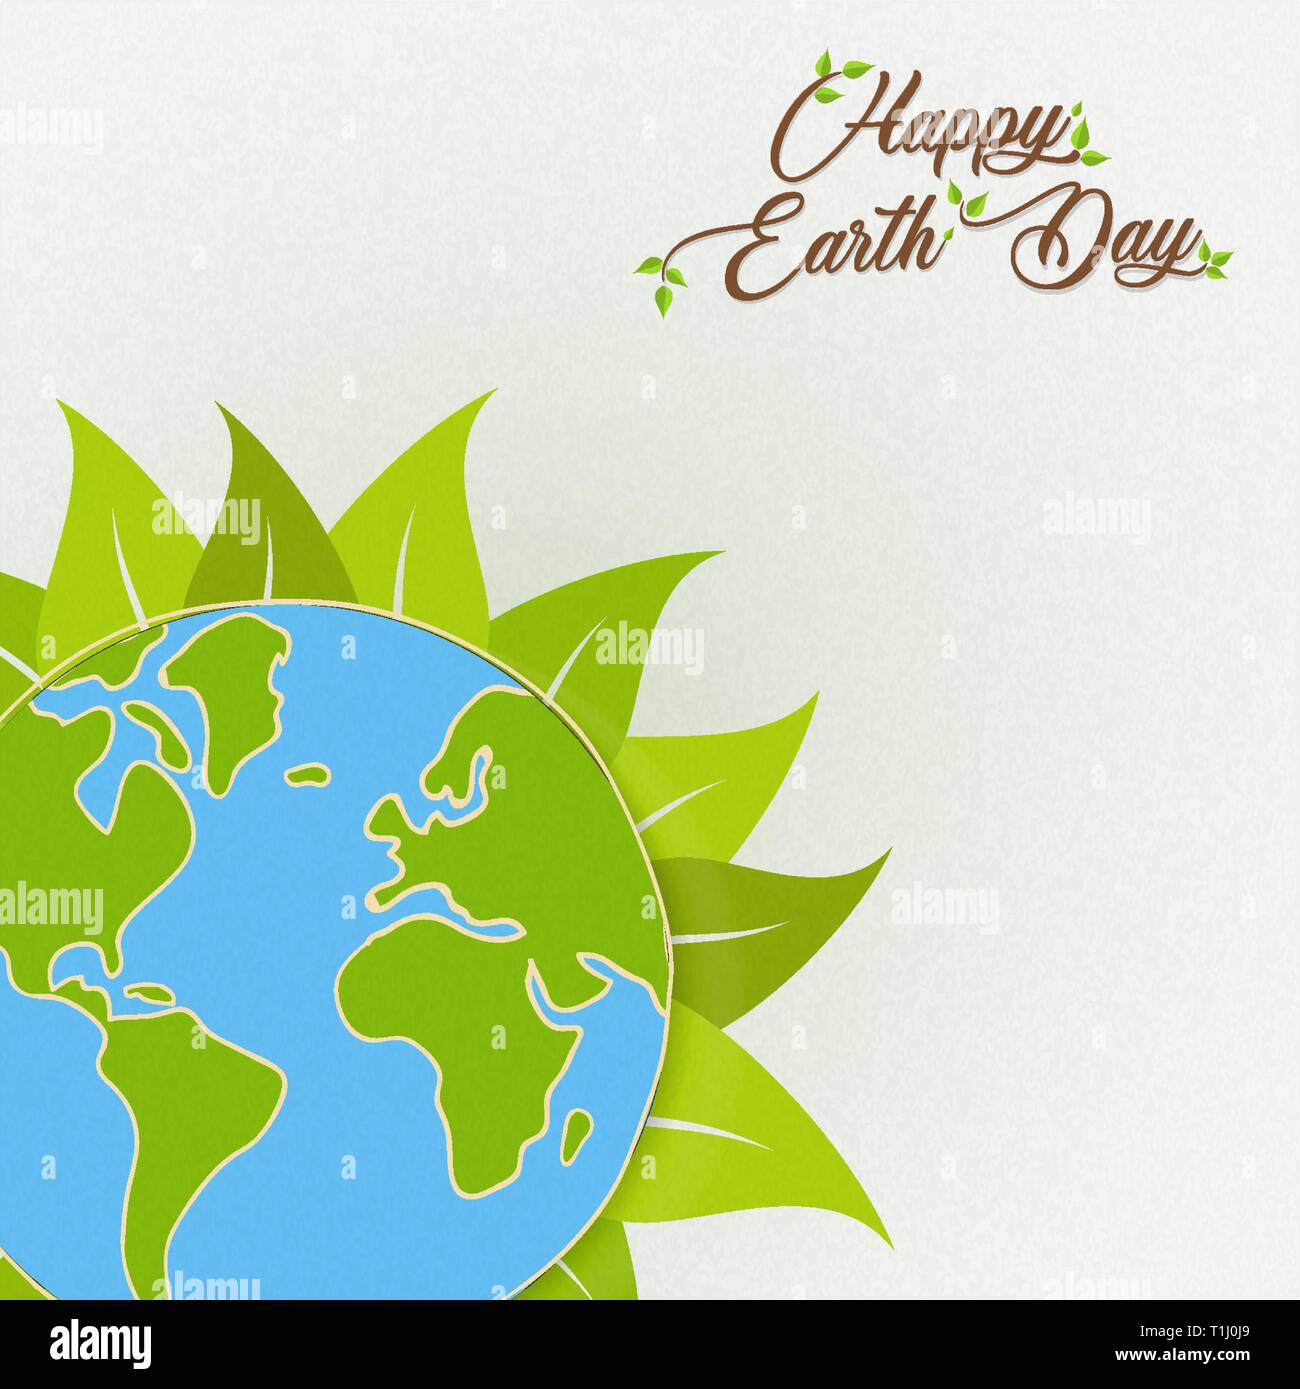 Heureux le jour de la Terre International illustration. Planète verte avec des feuilles de plantes pour les soins de la nature et de l'environnement de l'aide. Illustration de Vecteur